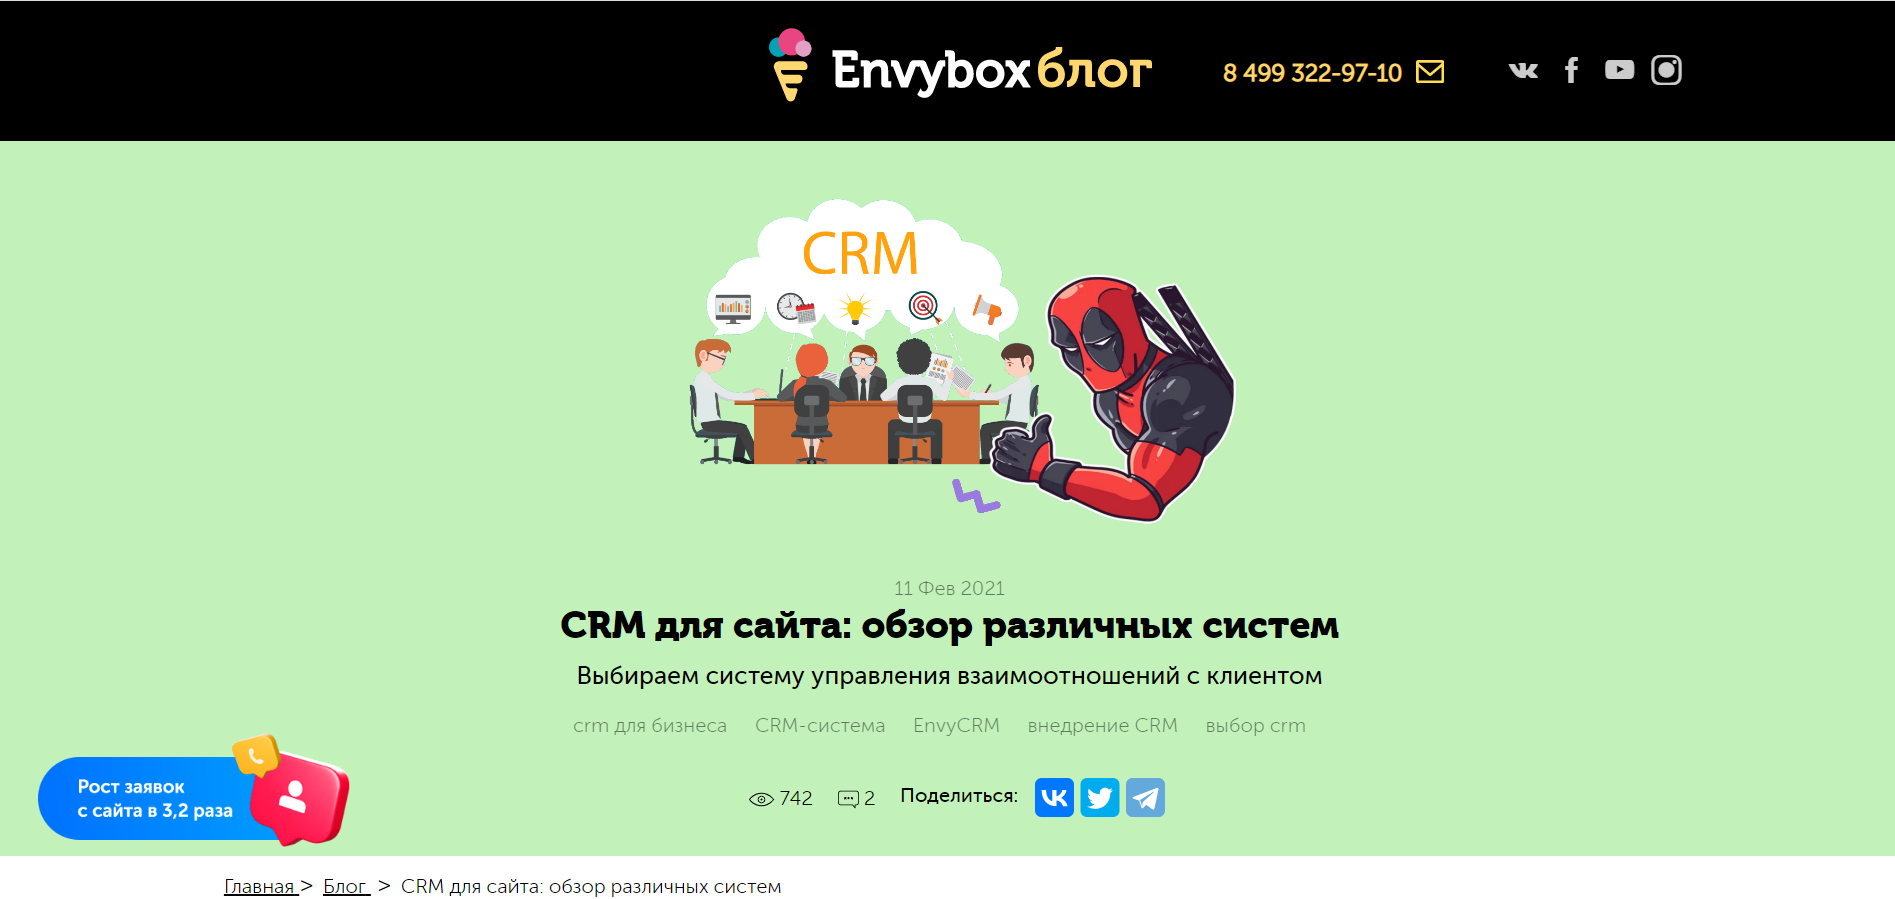 CRM для сайта: обзор различных систем